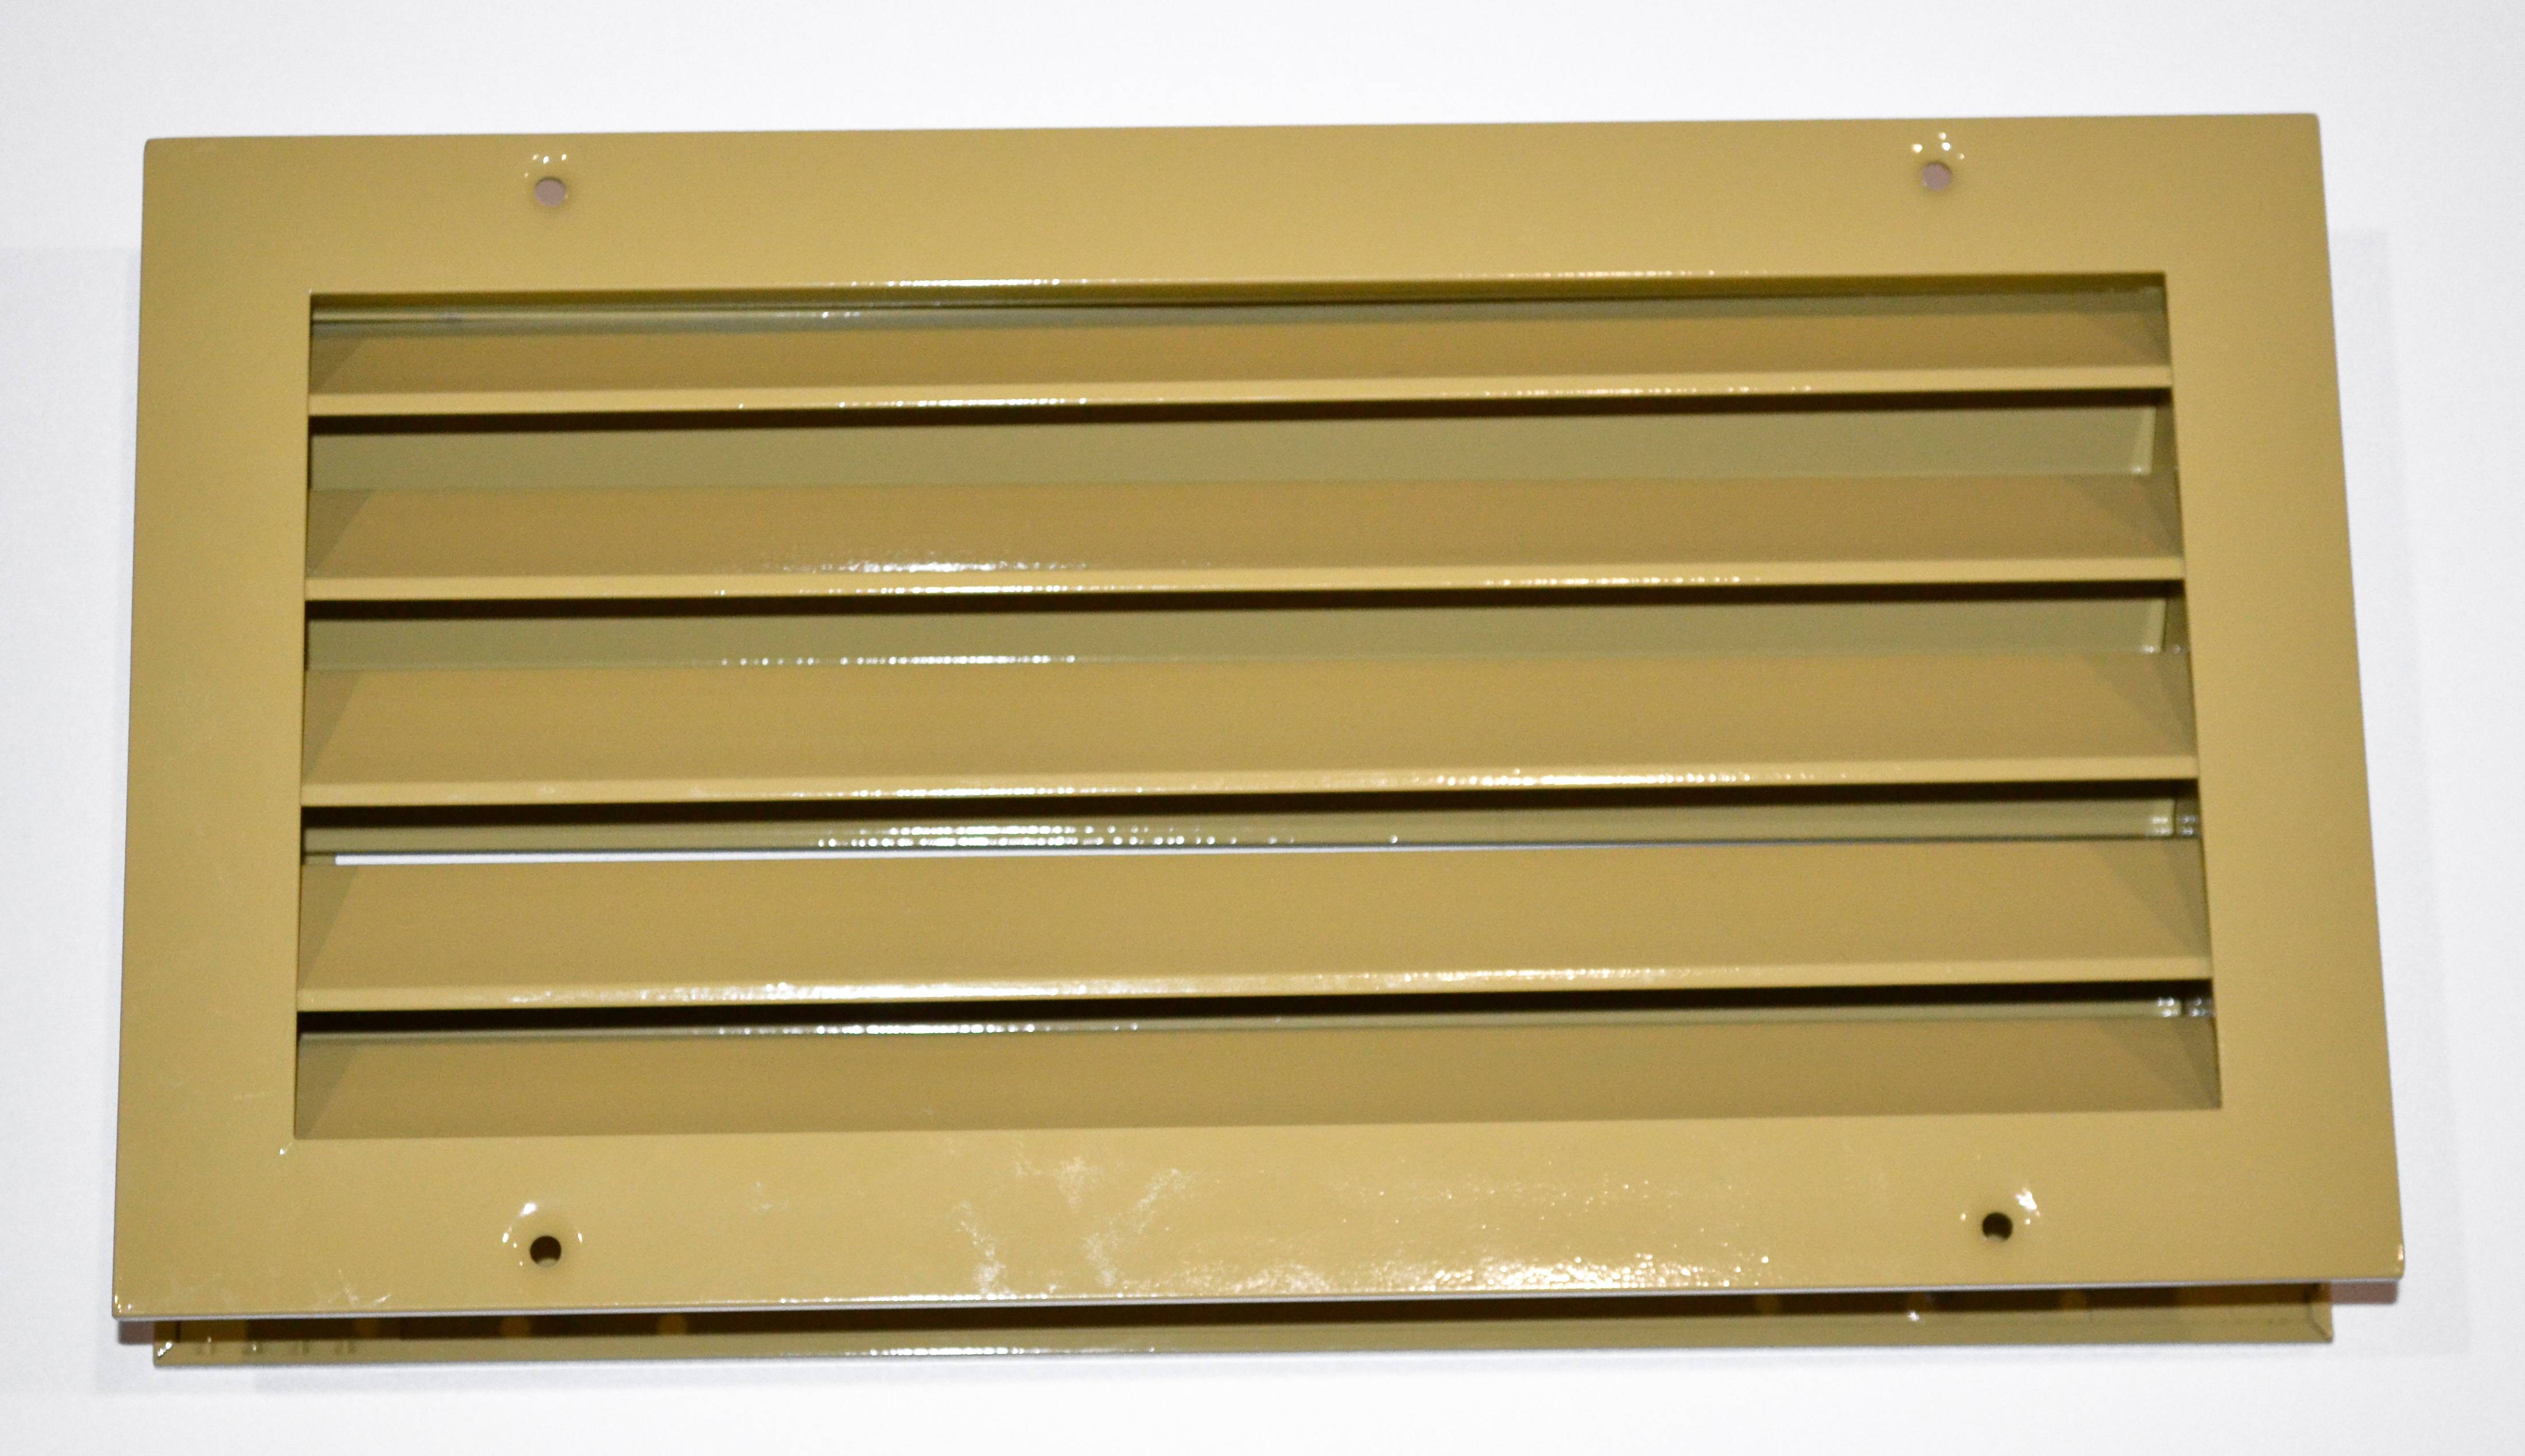 Вентиляционная решетка для двери: переточные модели вентрешеток межкомнатных полотен для вентиляции и движения воздуха